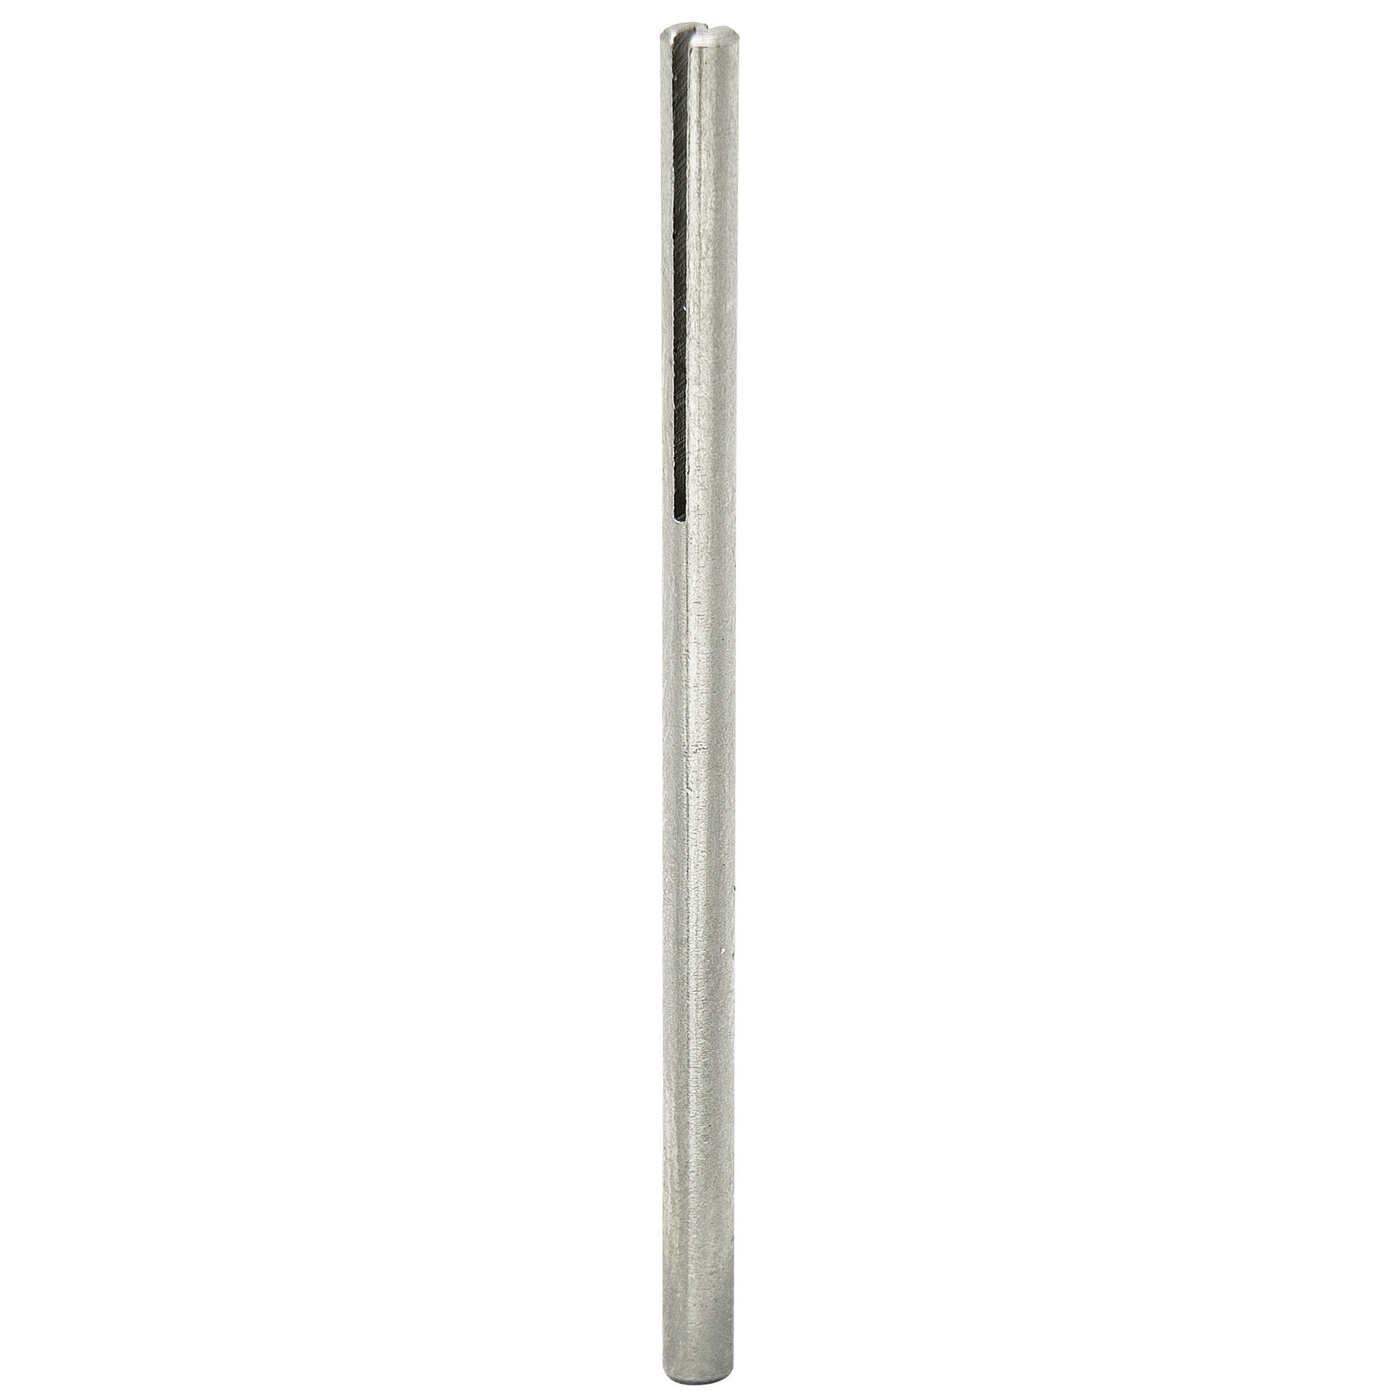 FINO Mandrelle, für Schleifpapier, Schlitzlänge 19,7 mm - 10 Stück